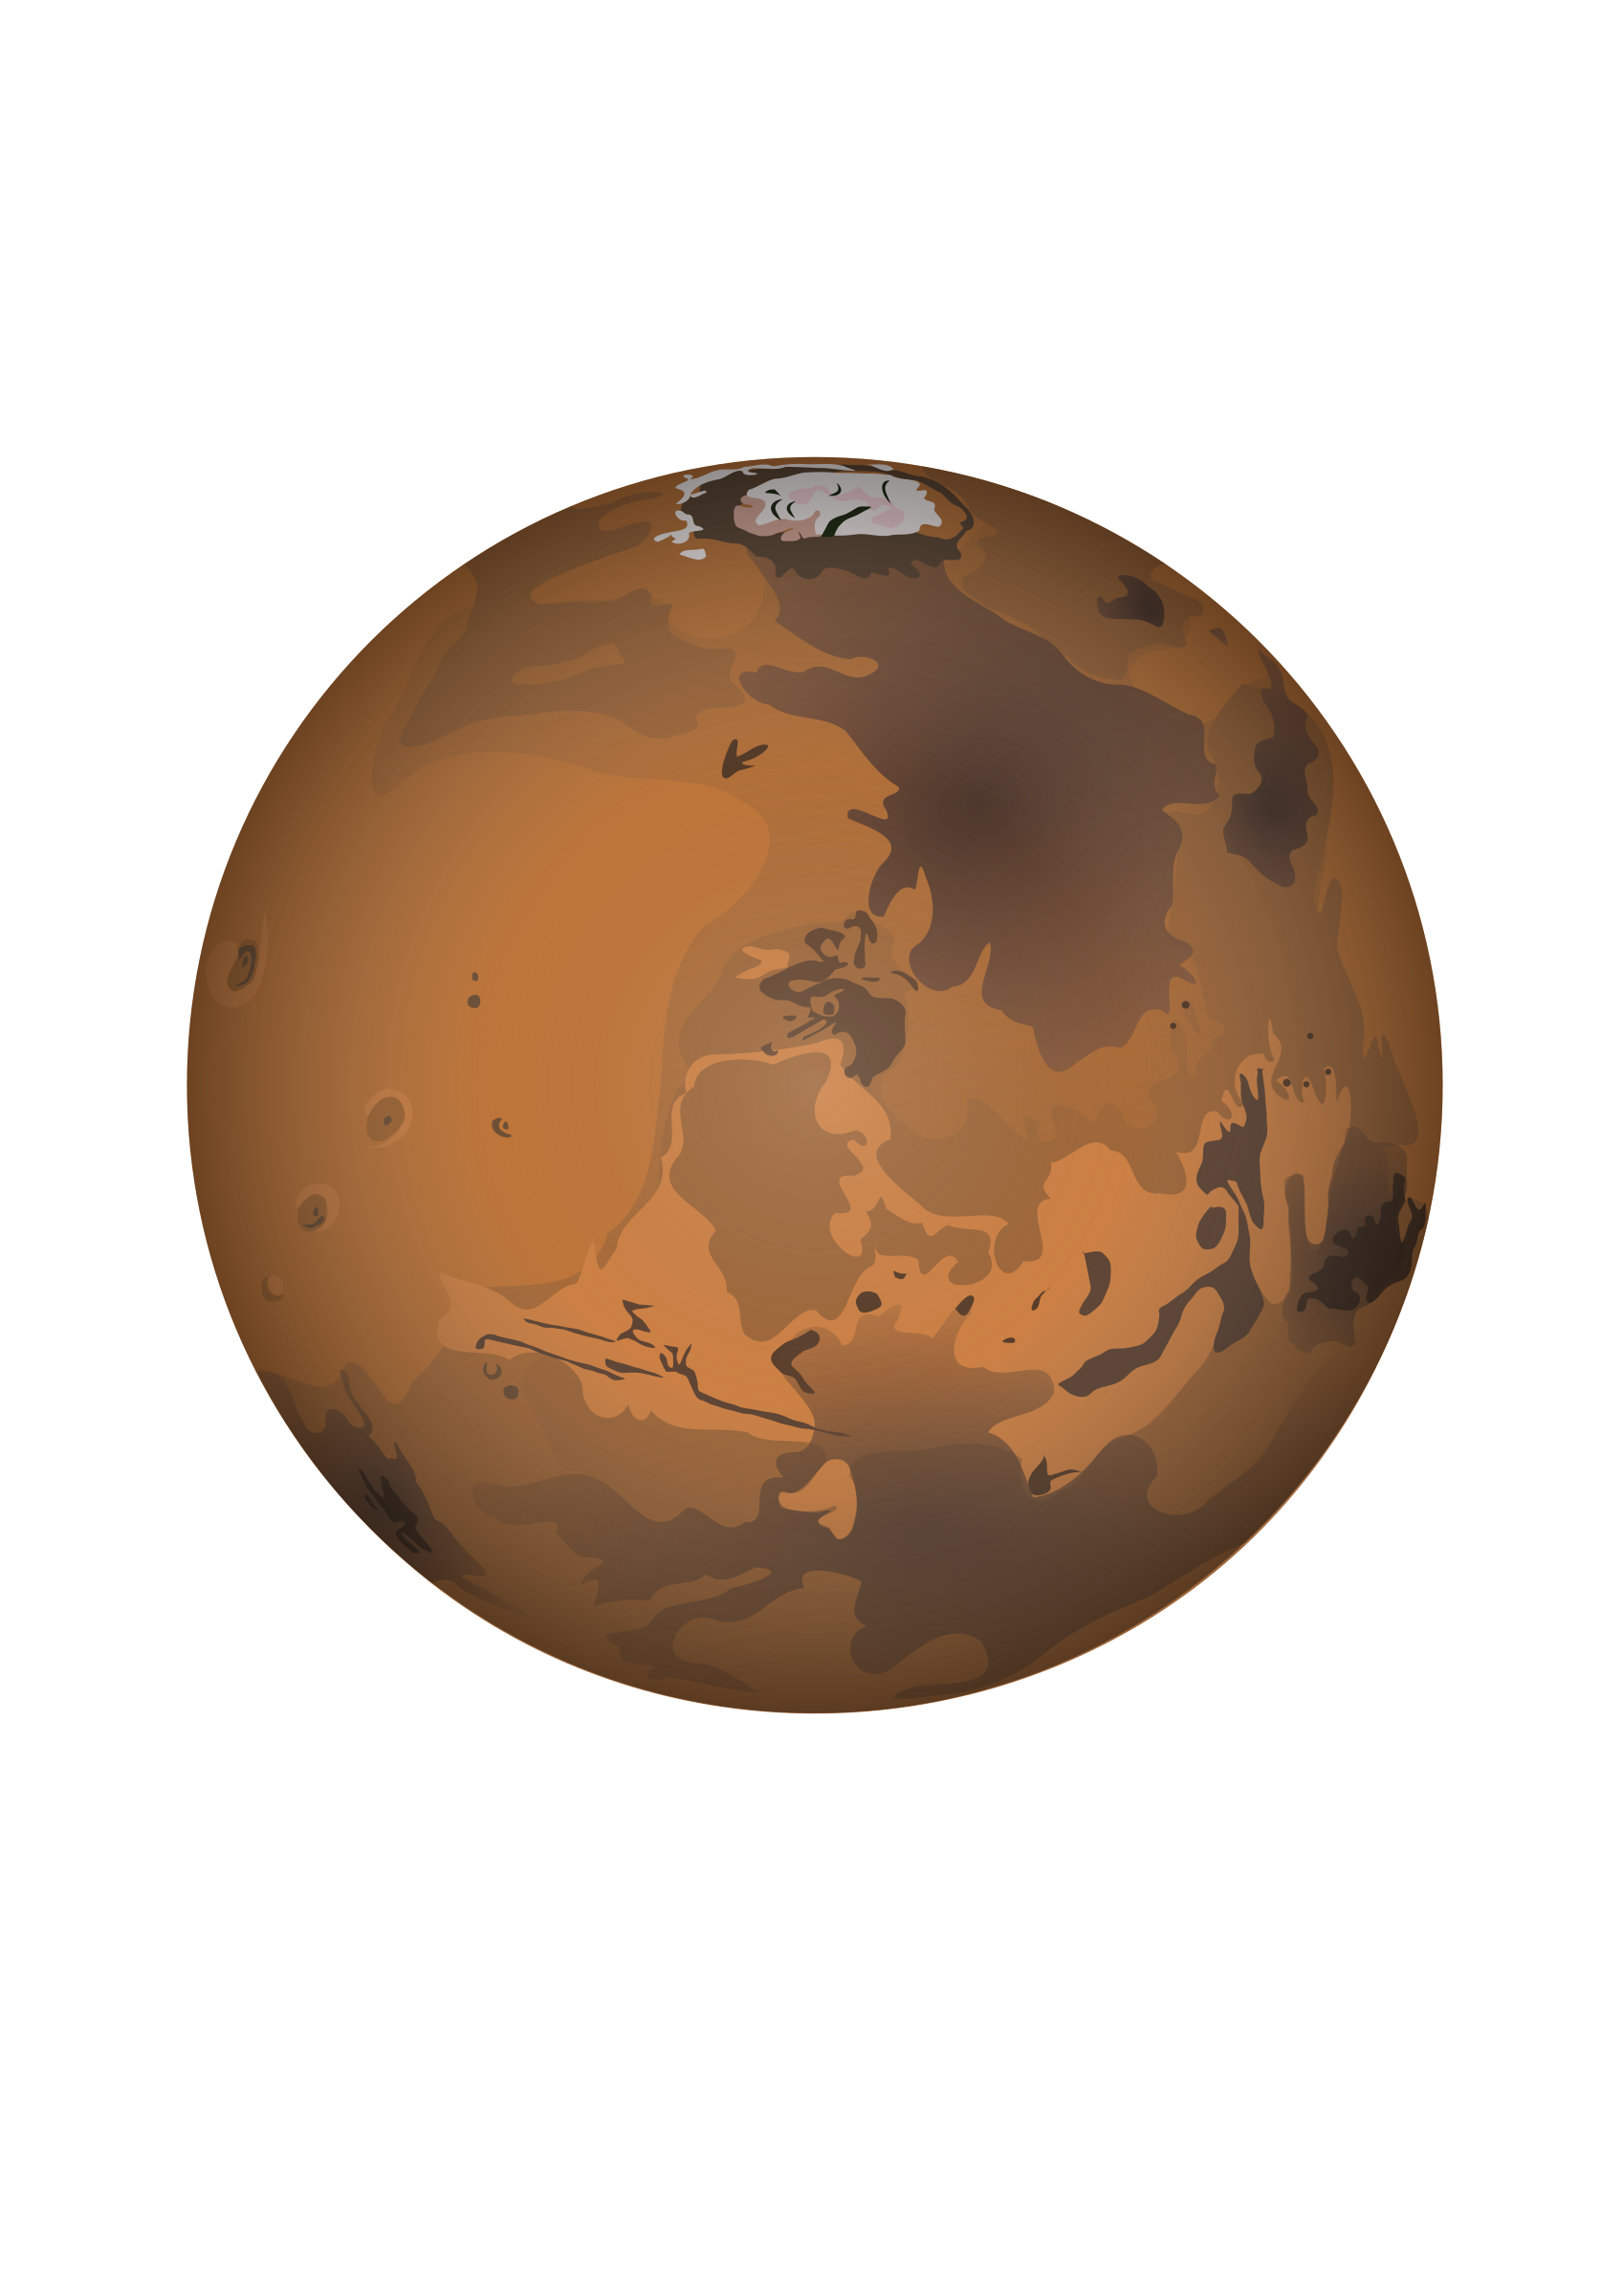 Mars Clipart : Planet mars illustration, Earth Terrestrial planet Mars